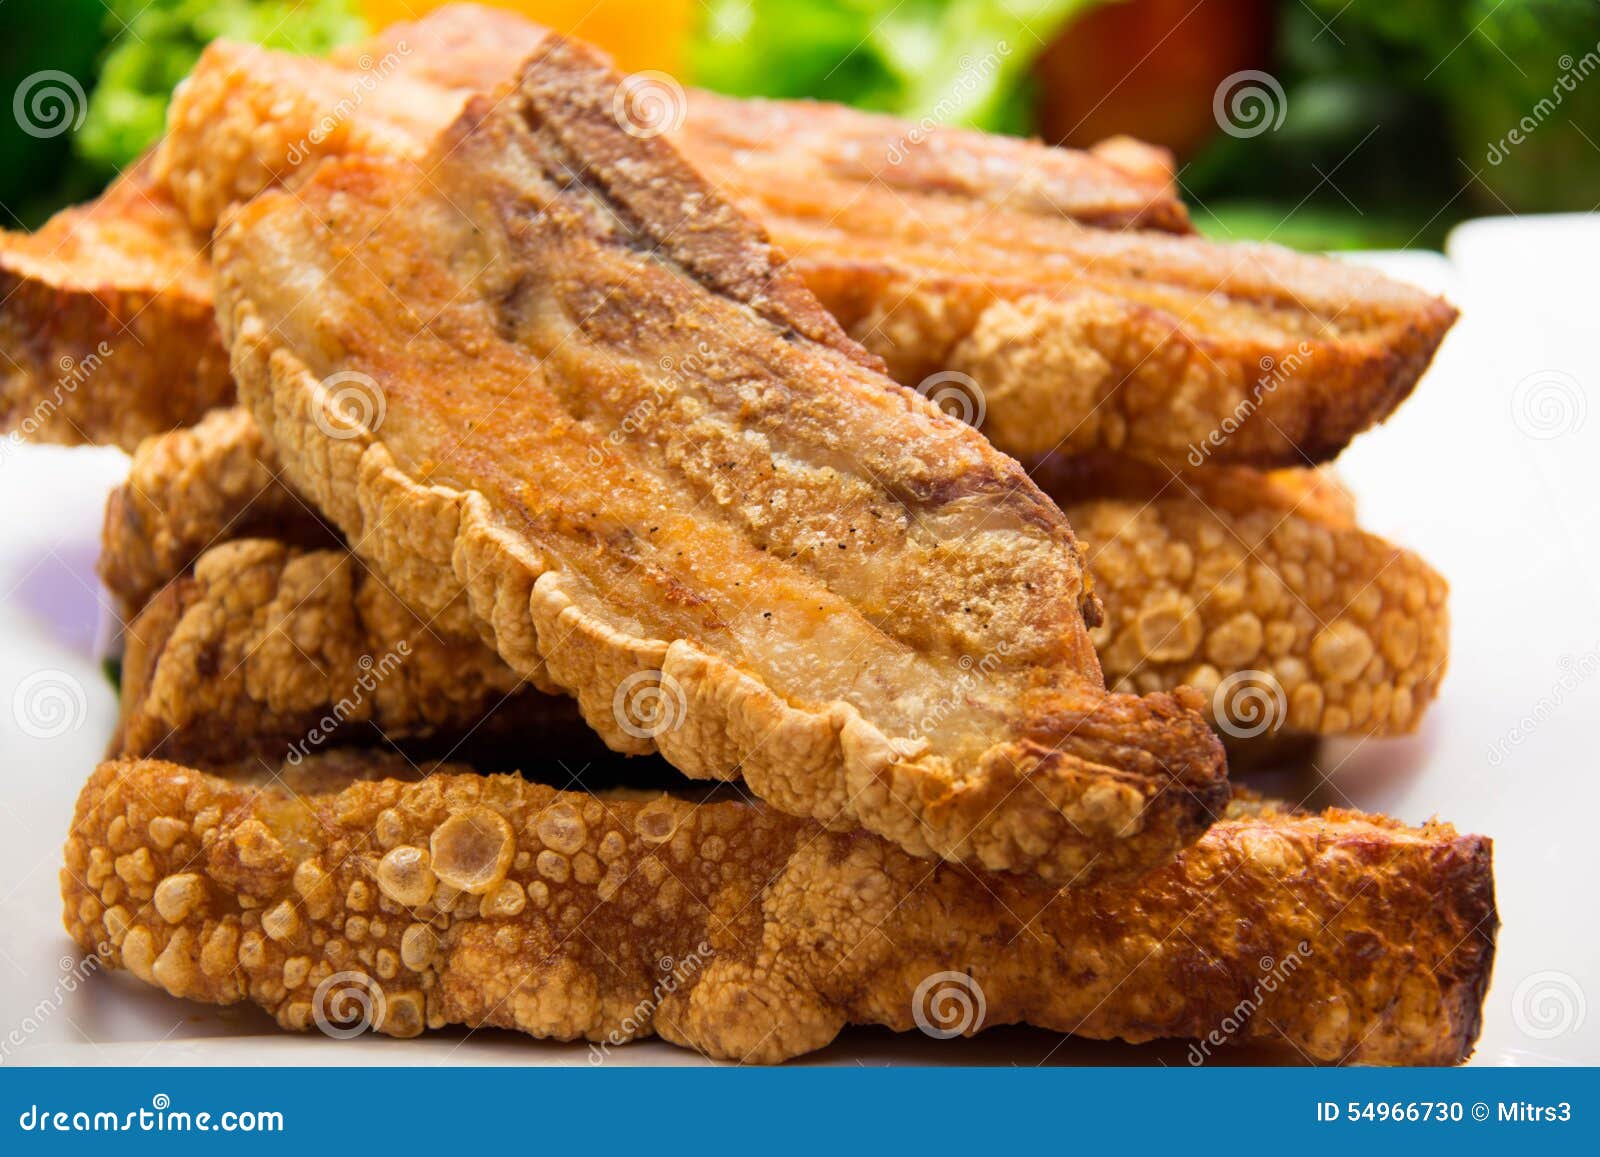 Pancia Di Carne Di Maiale Croccante Di Recente Al Forno Fotografia Stock Immagine Di Pasto Alimento